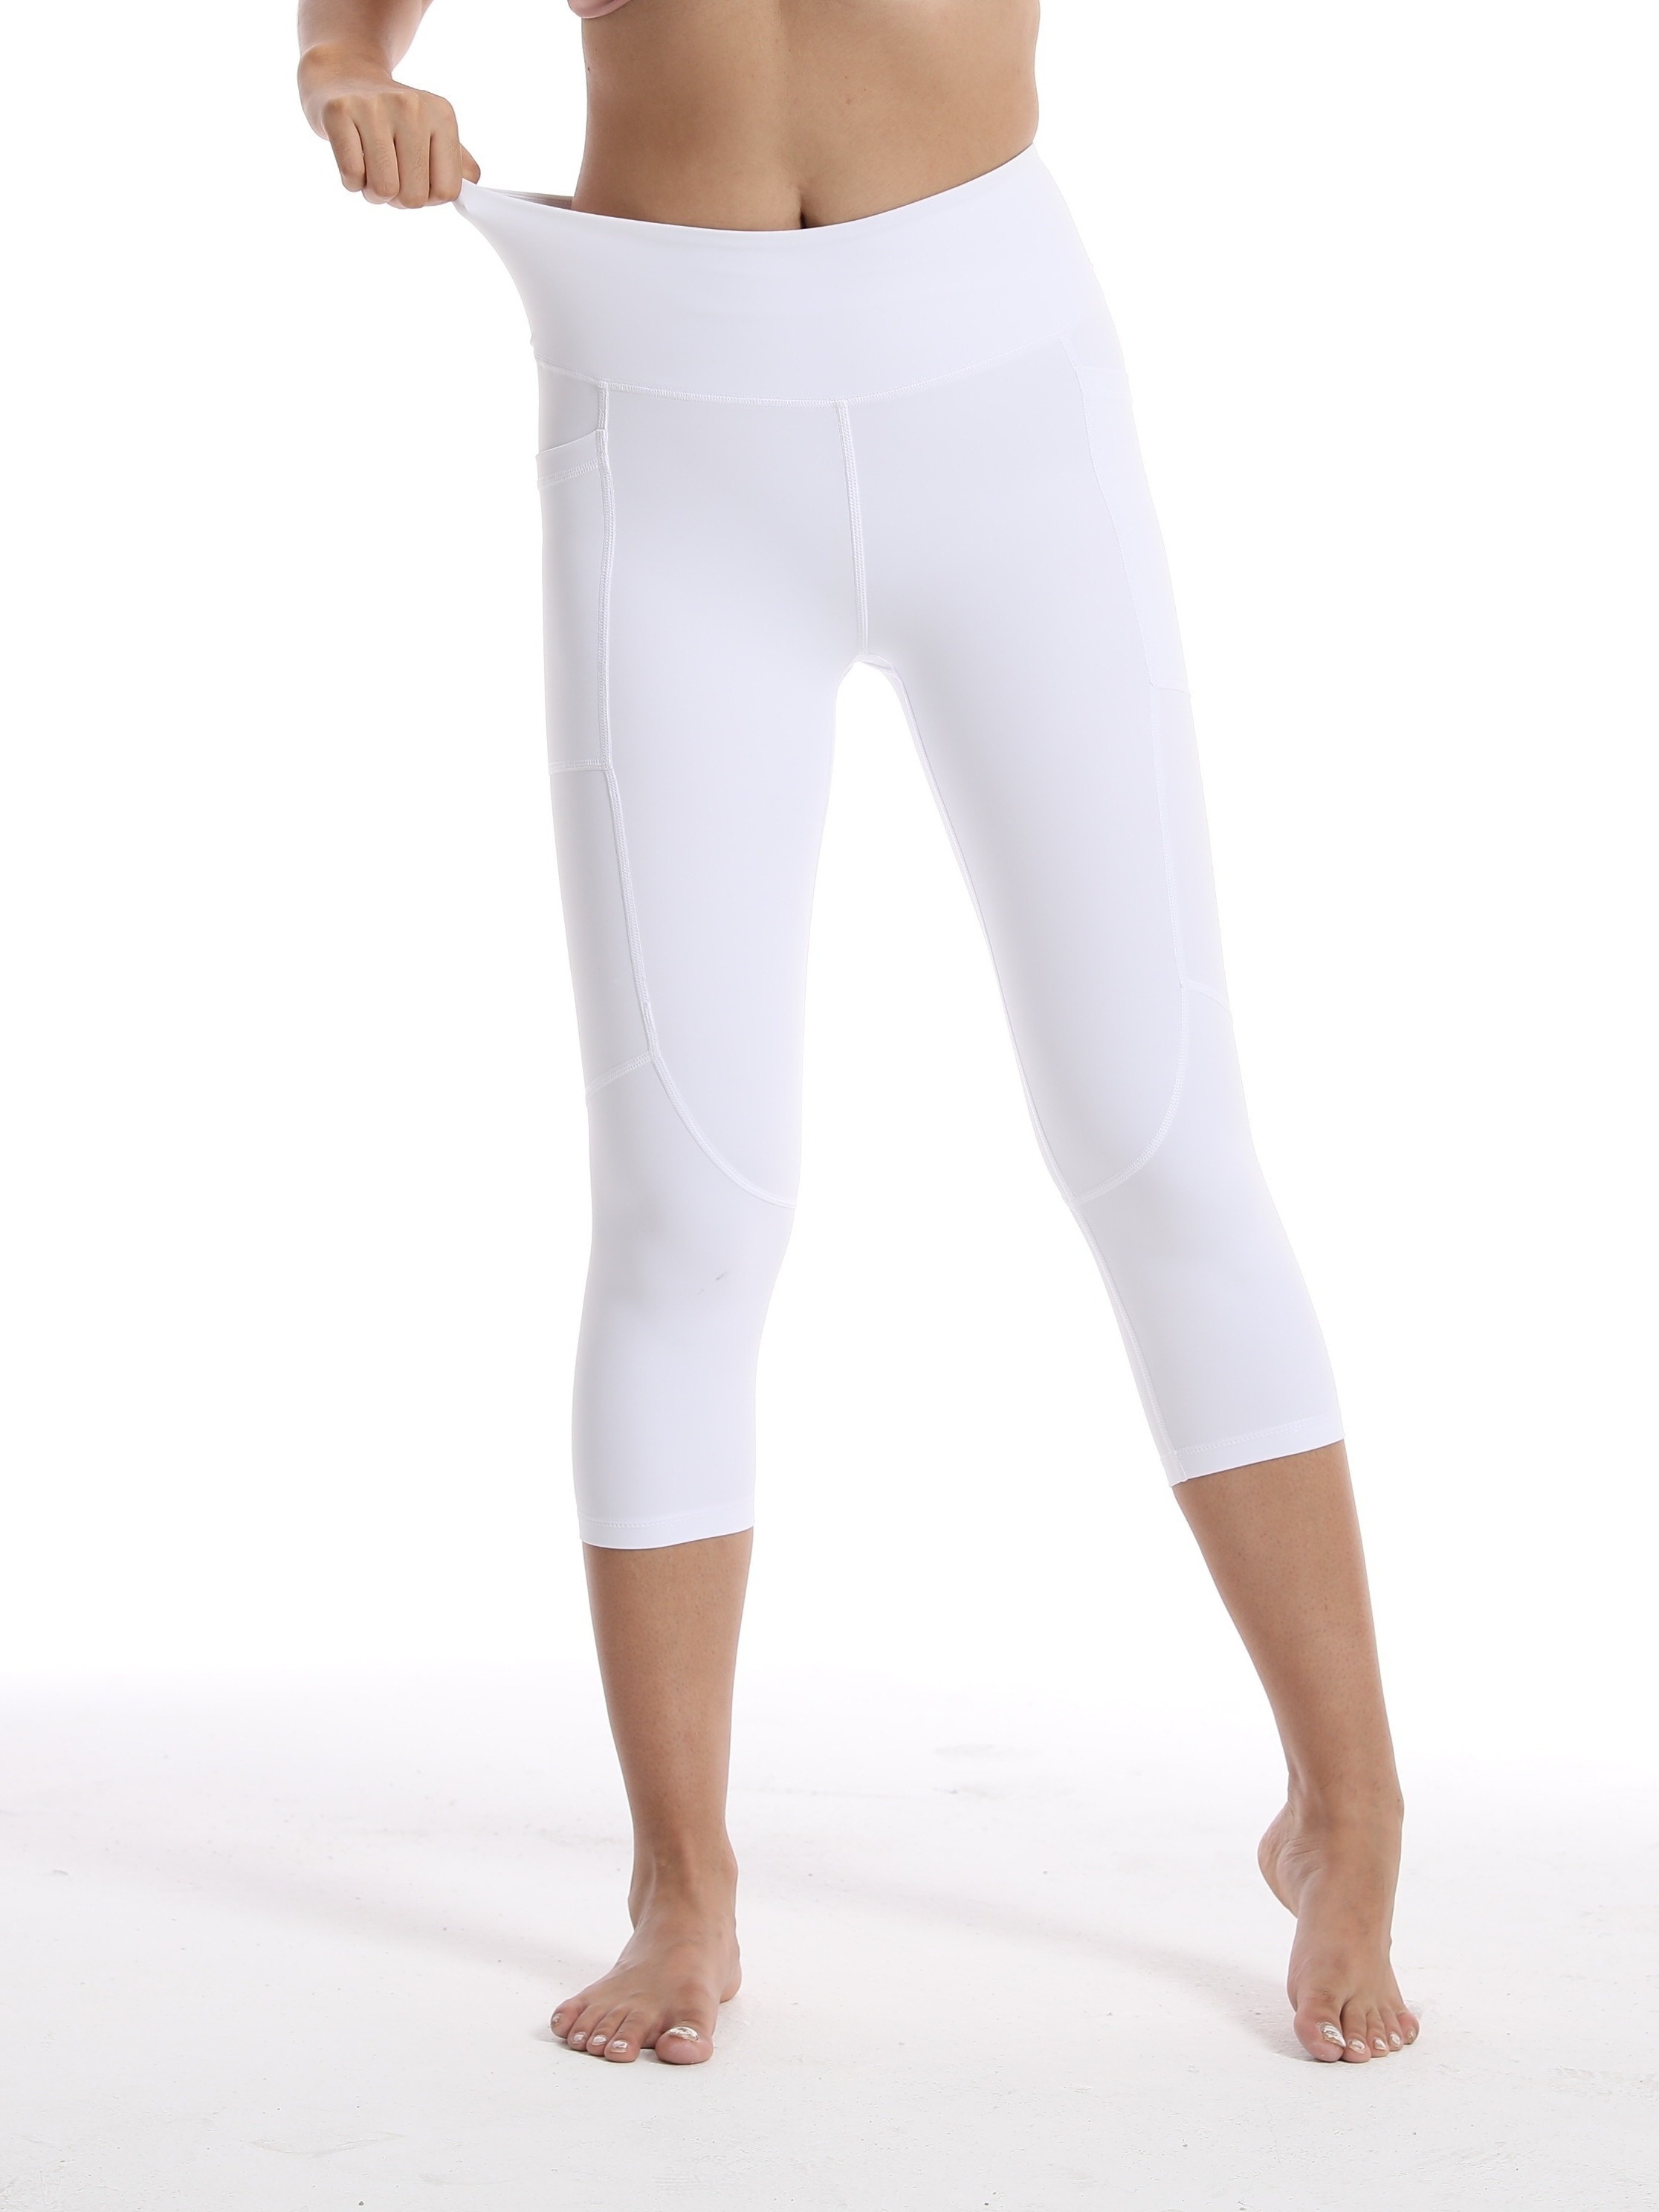 UKAP Women Capri Leggings High Waisted Trousers Slim Leg Yoga Pants Soft  Running Bottoms White L 